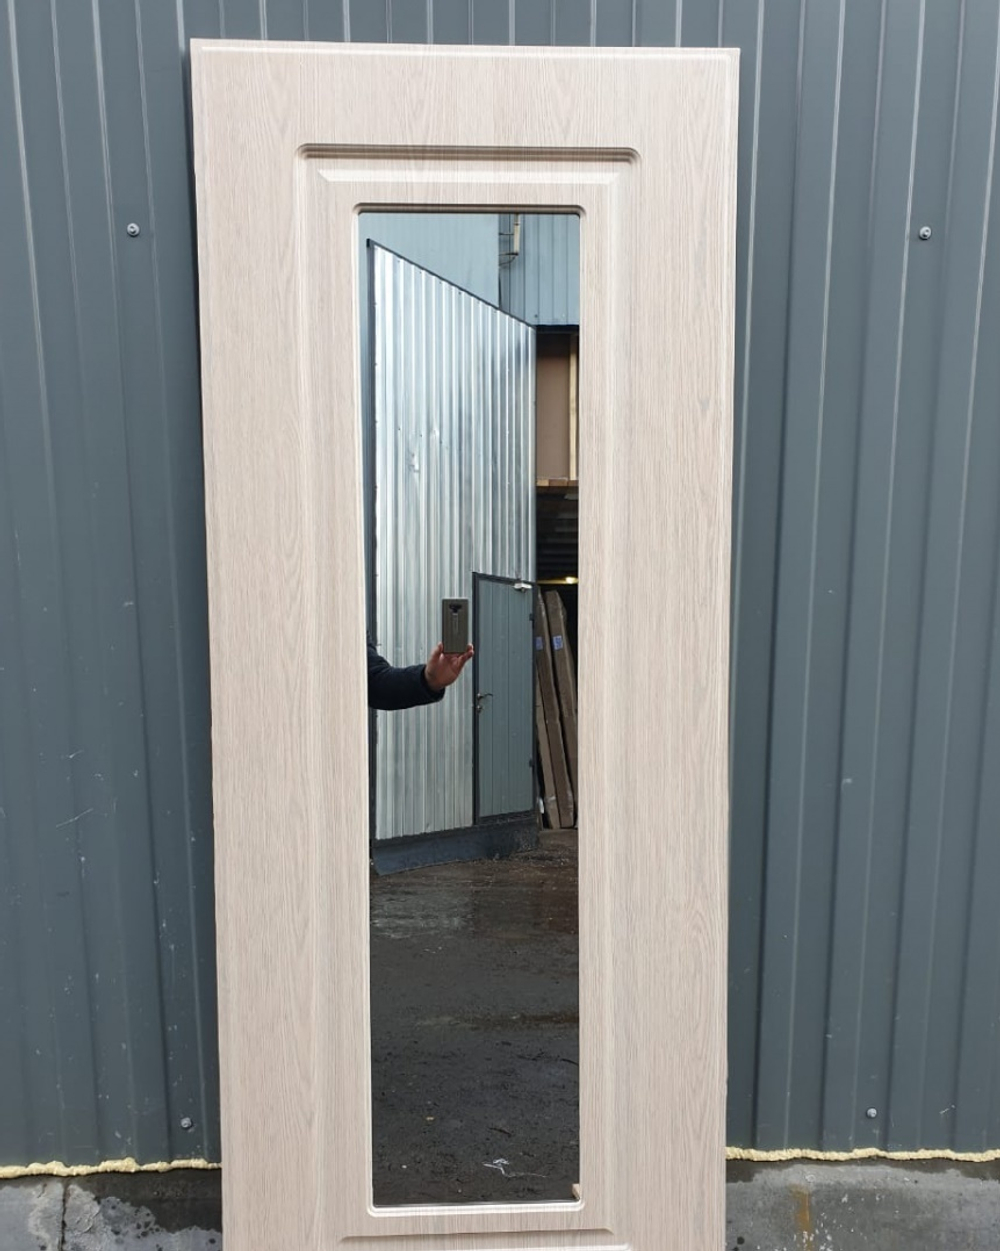 Входная металлическая дверь с зеркалом RеX (РЕКС) Премиум-Н 243 Венге 3К / зеркало ФЛЗ-120 Венге